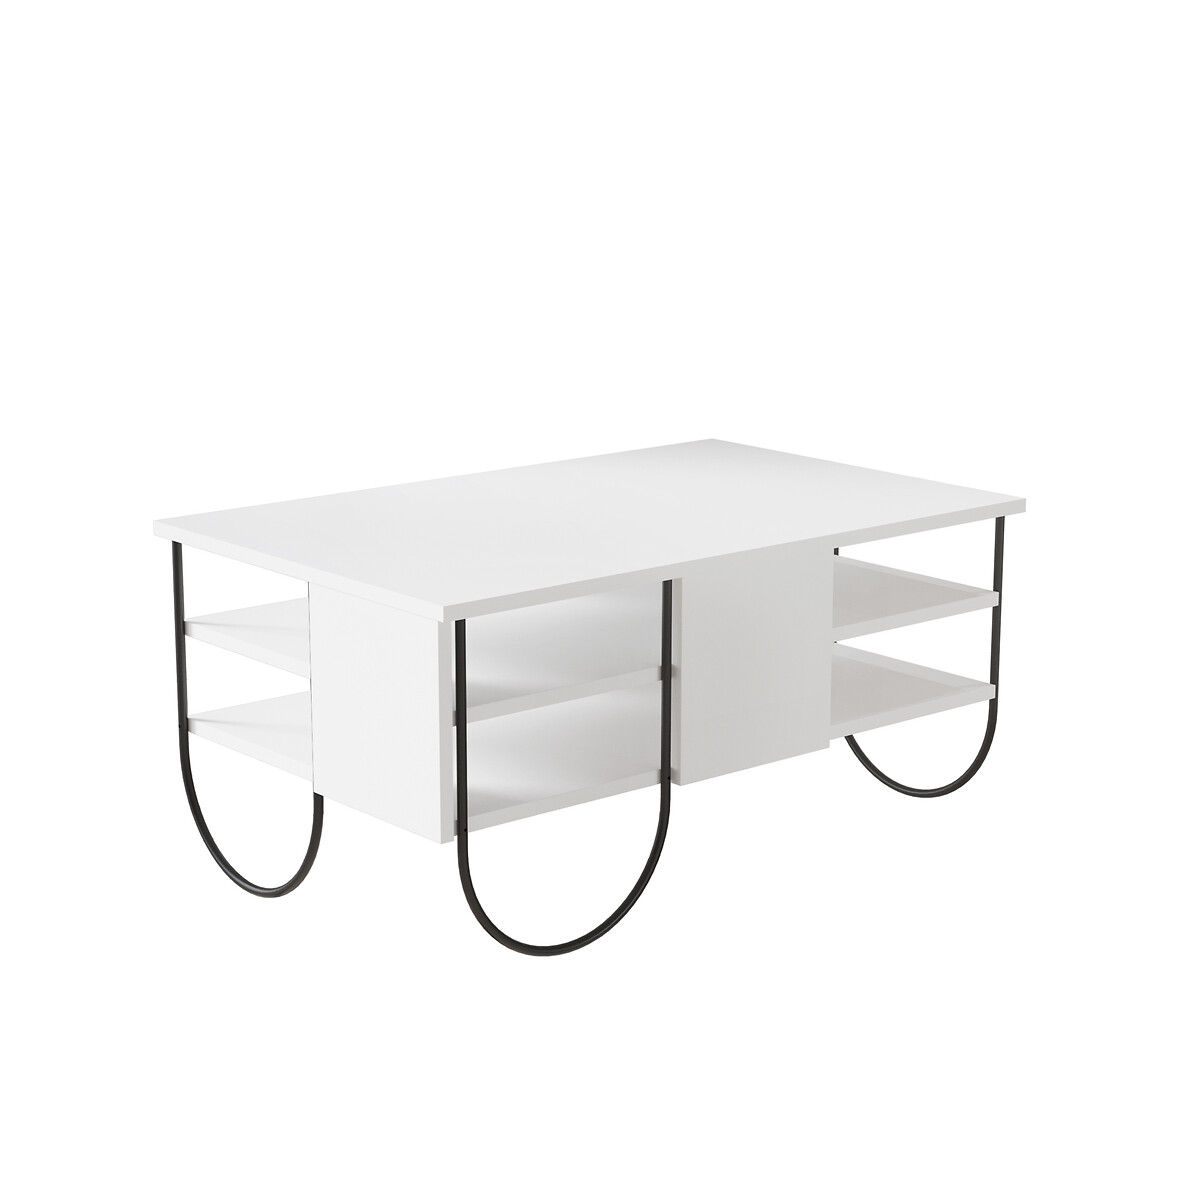 квадратный журнальный столик для гостиной современный минималистичный журнальный столик в скандинавском стиле журнальный столик для сал Журнальный стол NORFOLK COFFEE TABLE единый размер белый